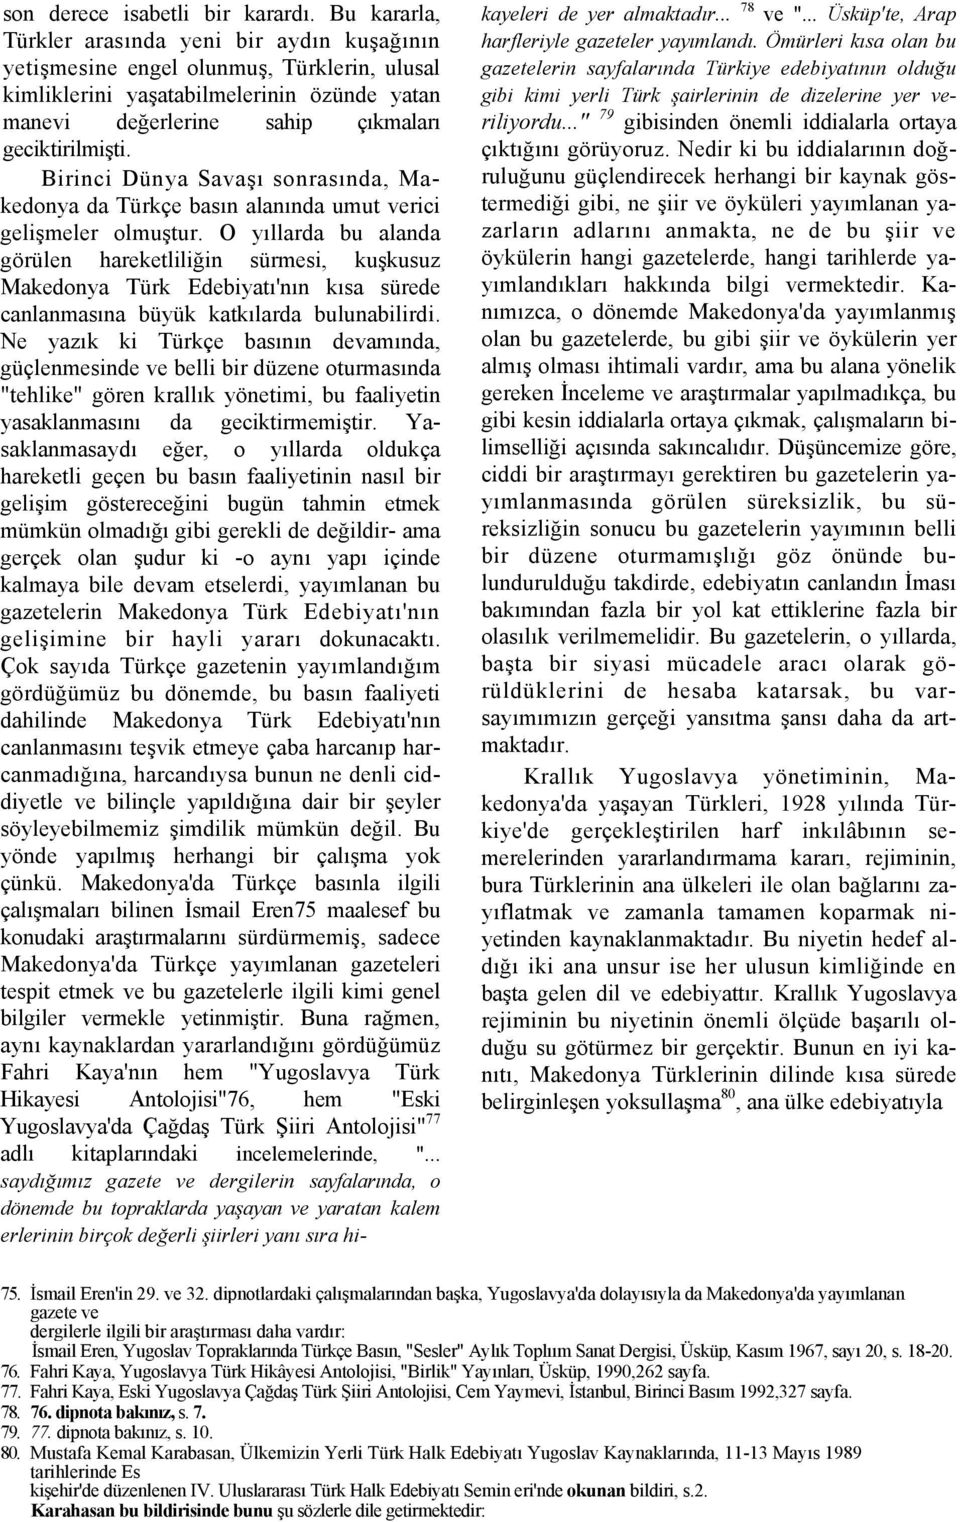 Birinci Dünya Savaşı sonrasında, Makedonya da Türkçe basın alanında umut verici gelişmeler olmuştur.